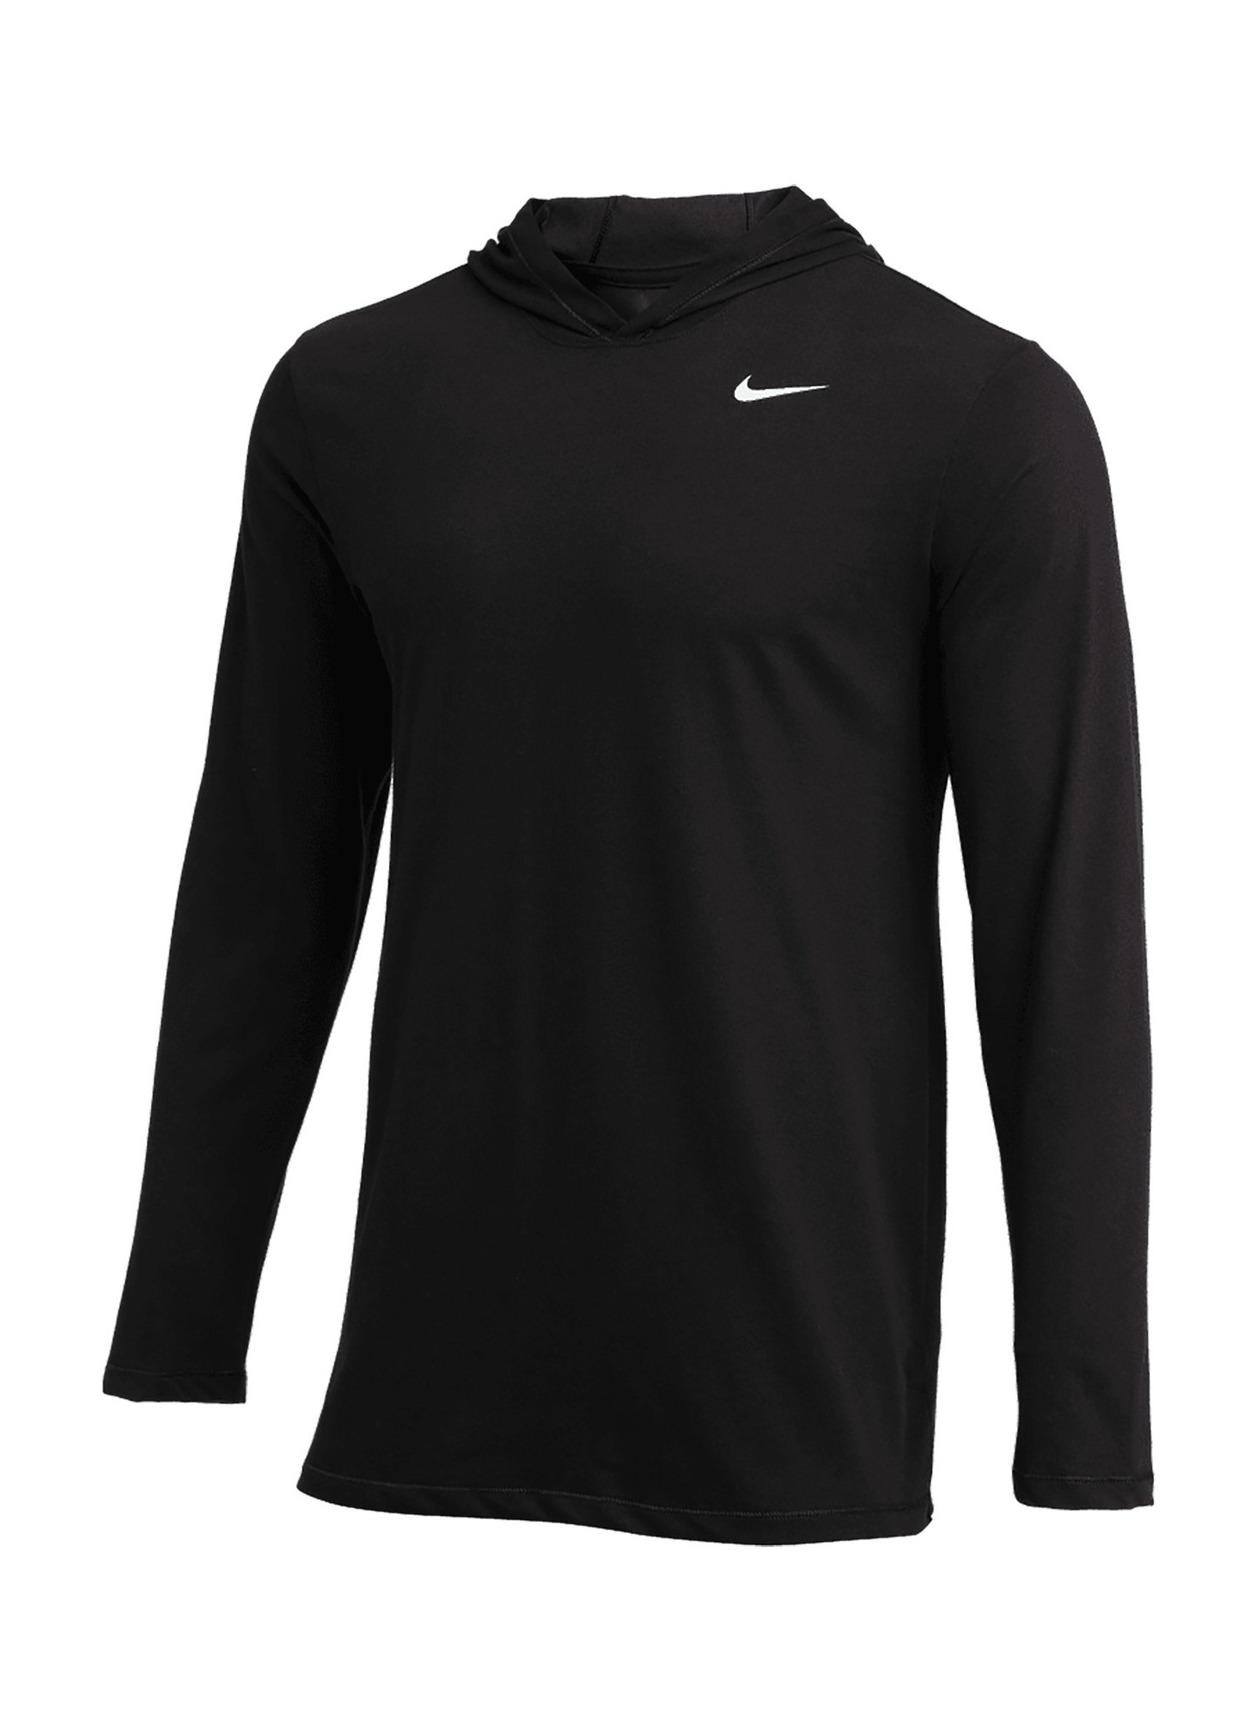 Nike Men's Black / White Dri-FIT Hooded T-Shirt